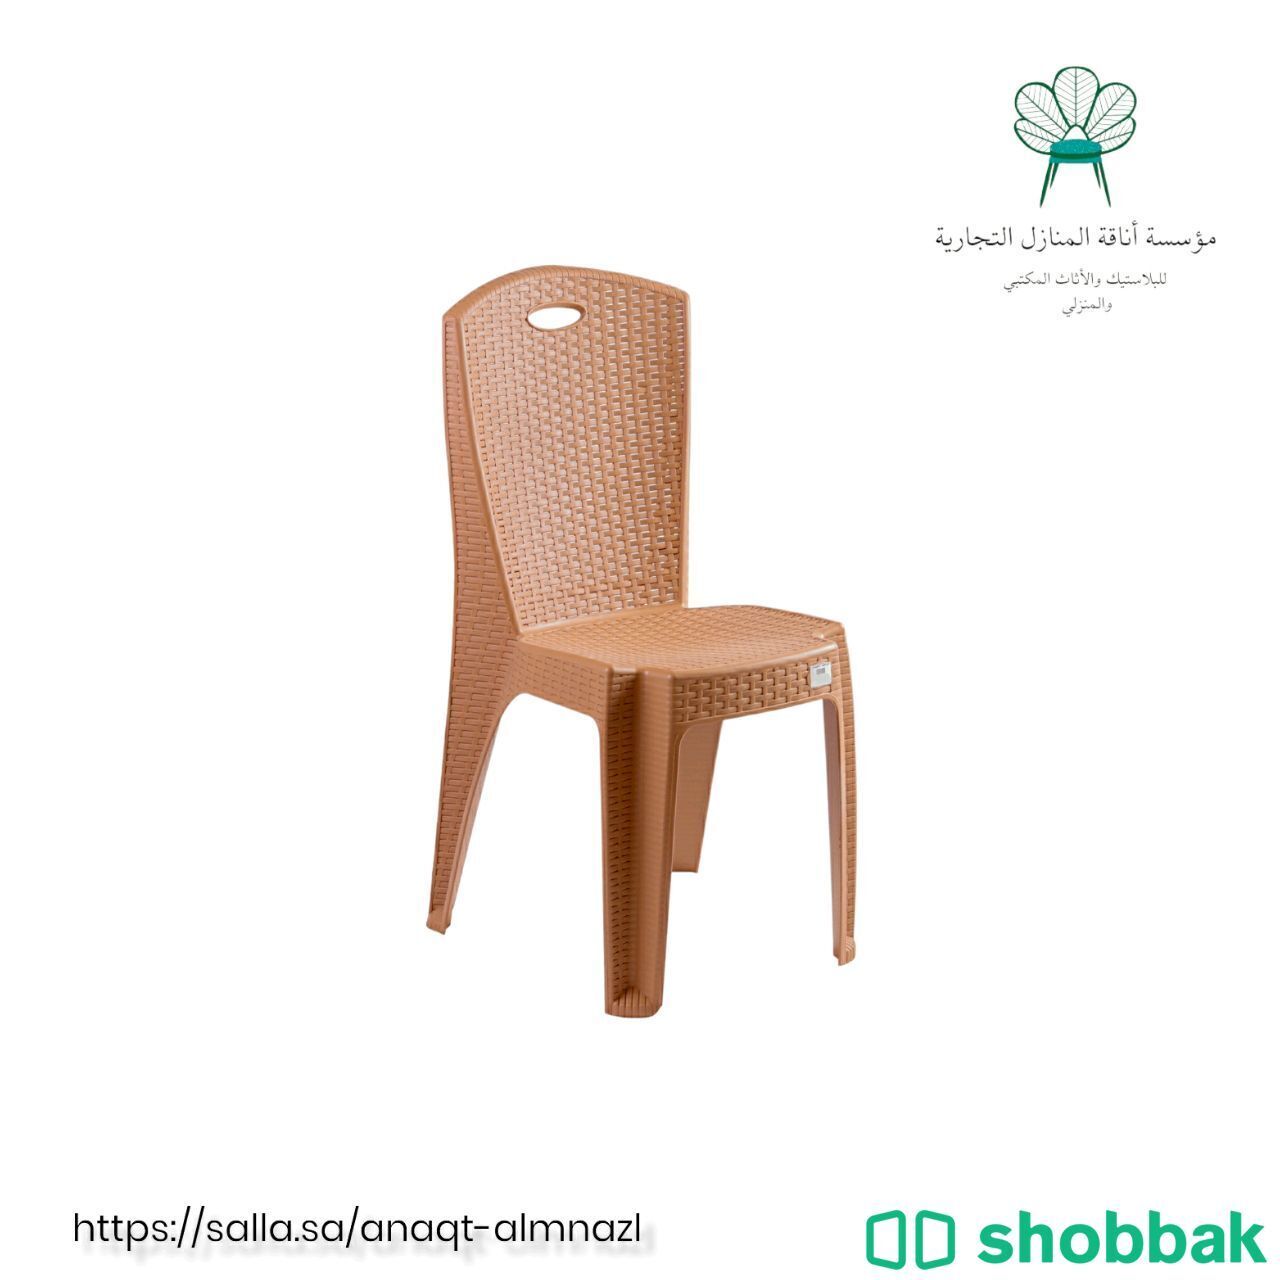 "كرسي الليث البلاستيكي: الراحة والأناقة في تصميم واحد Shobbak Saudi Arabia